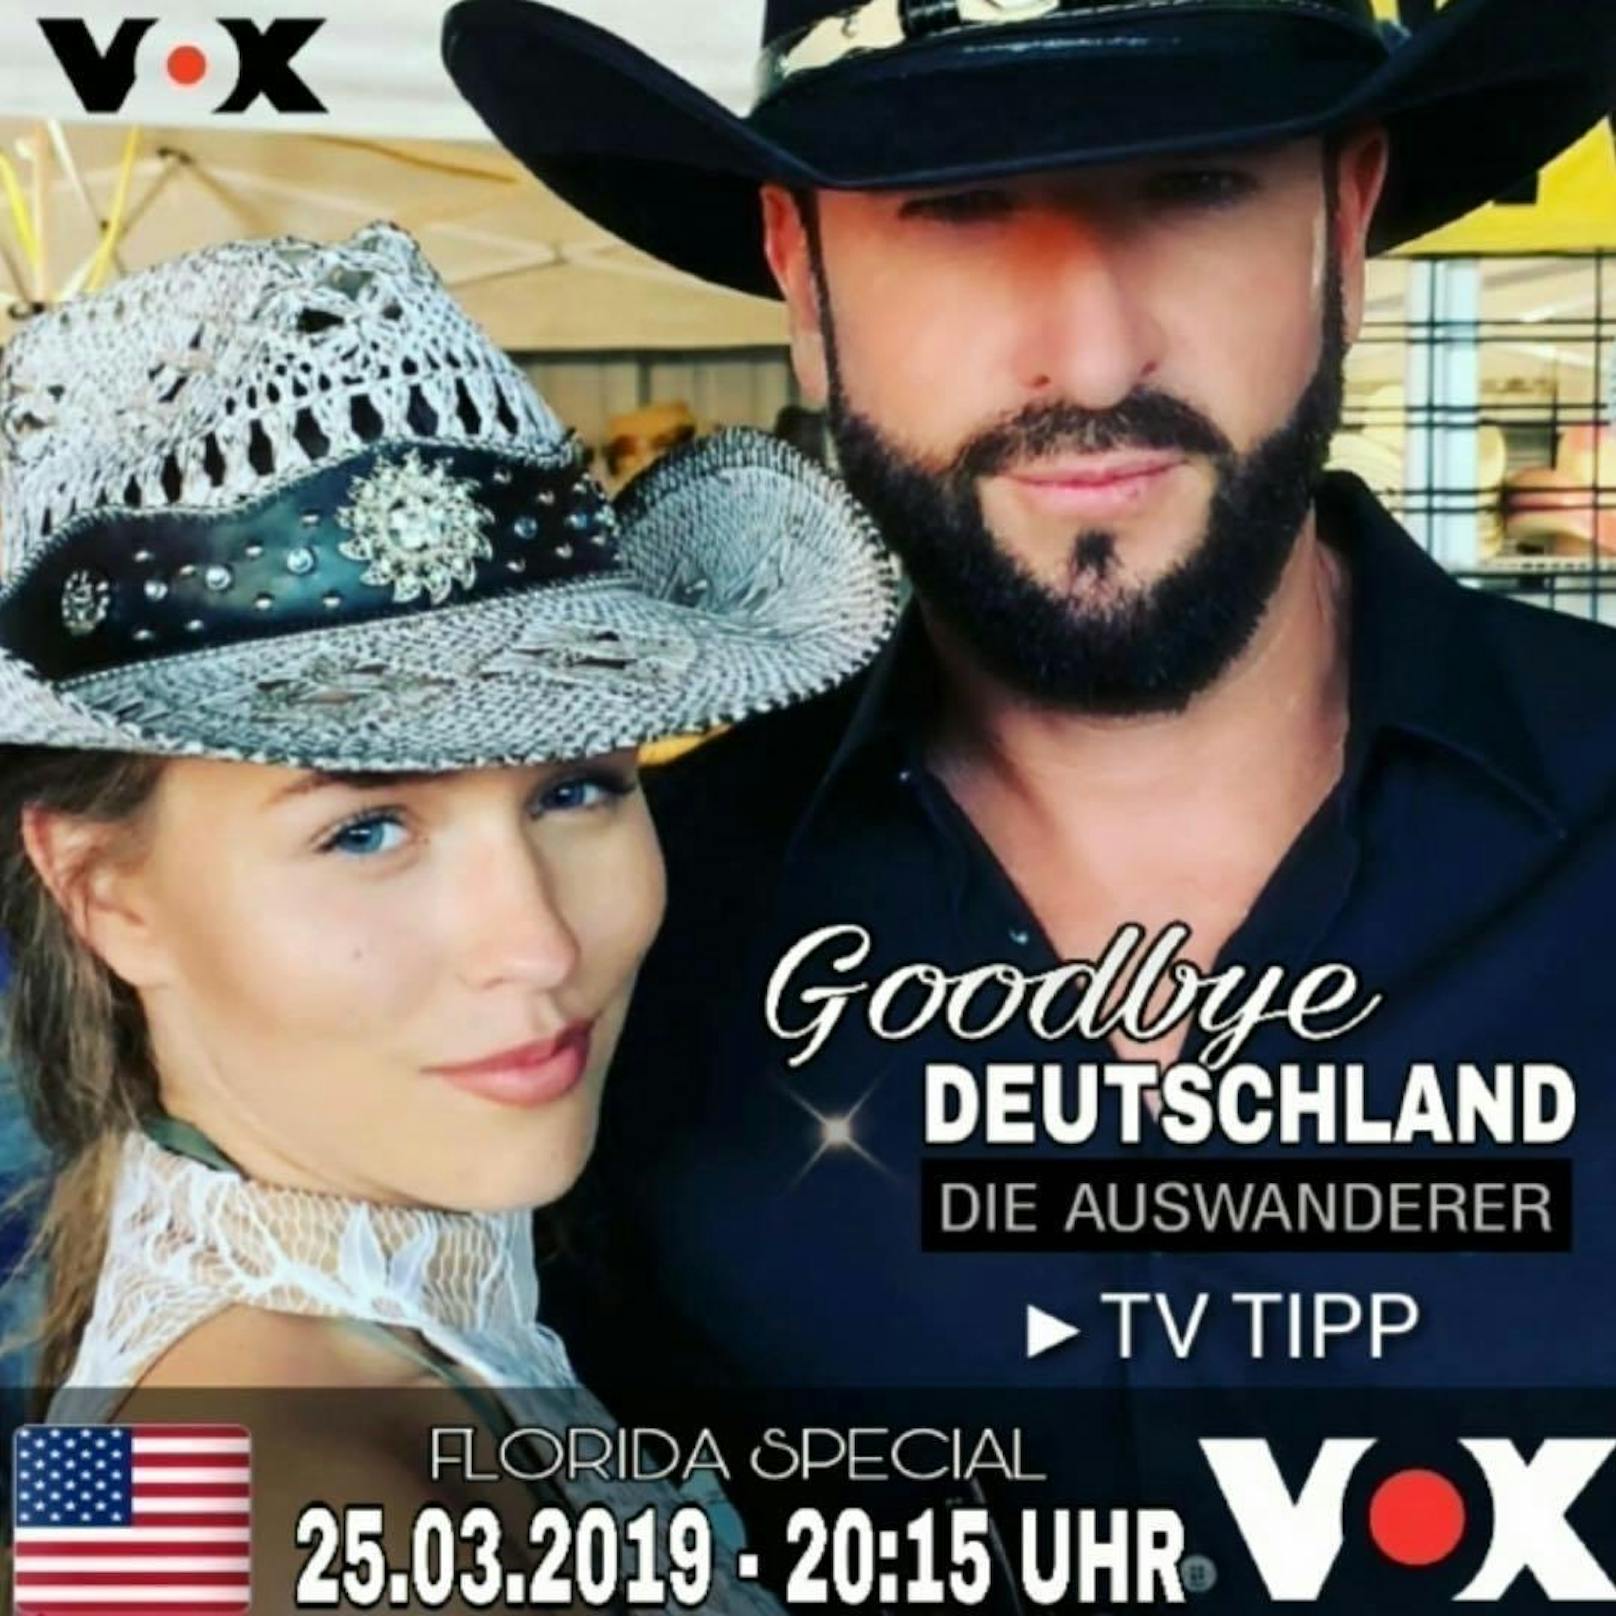 Zusammen mit Laura wird Michael Wendler von einem Kamerateam der Auswanderer-Serie "Goodbye Deutschland" begleitet.